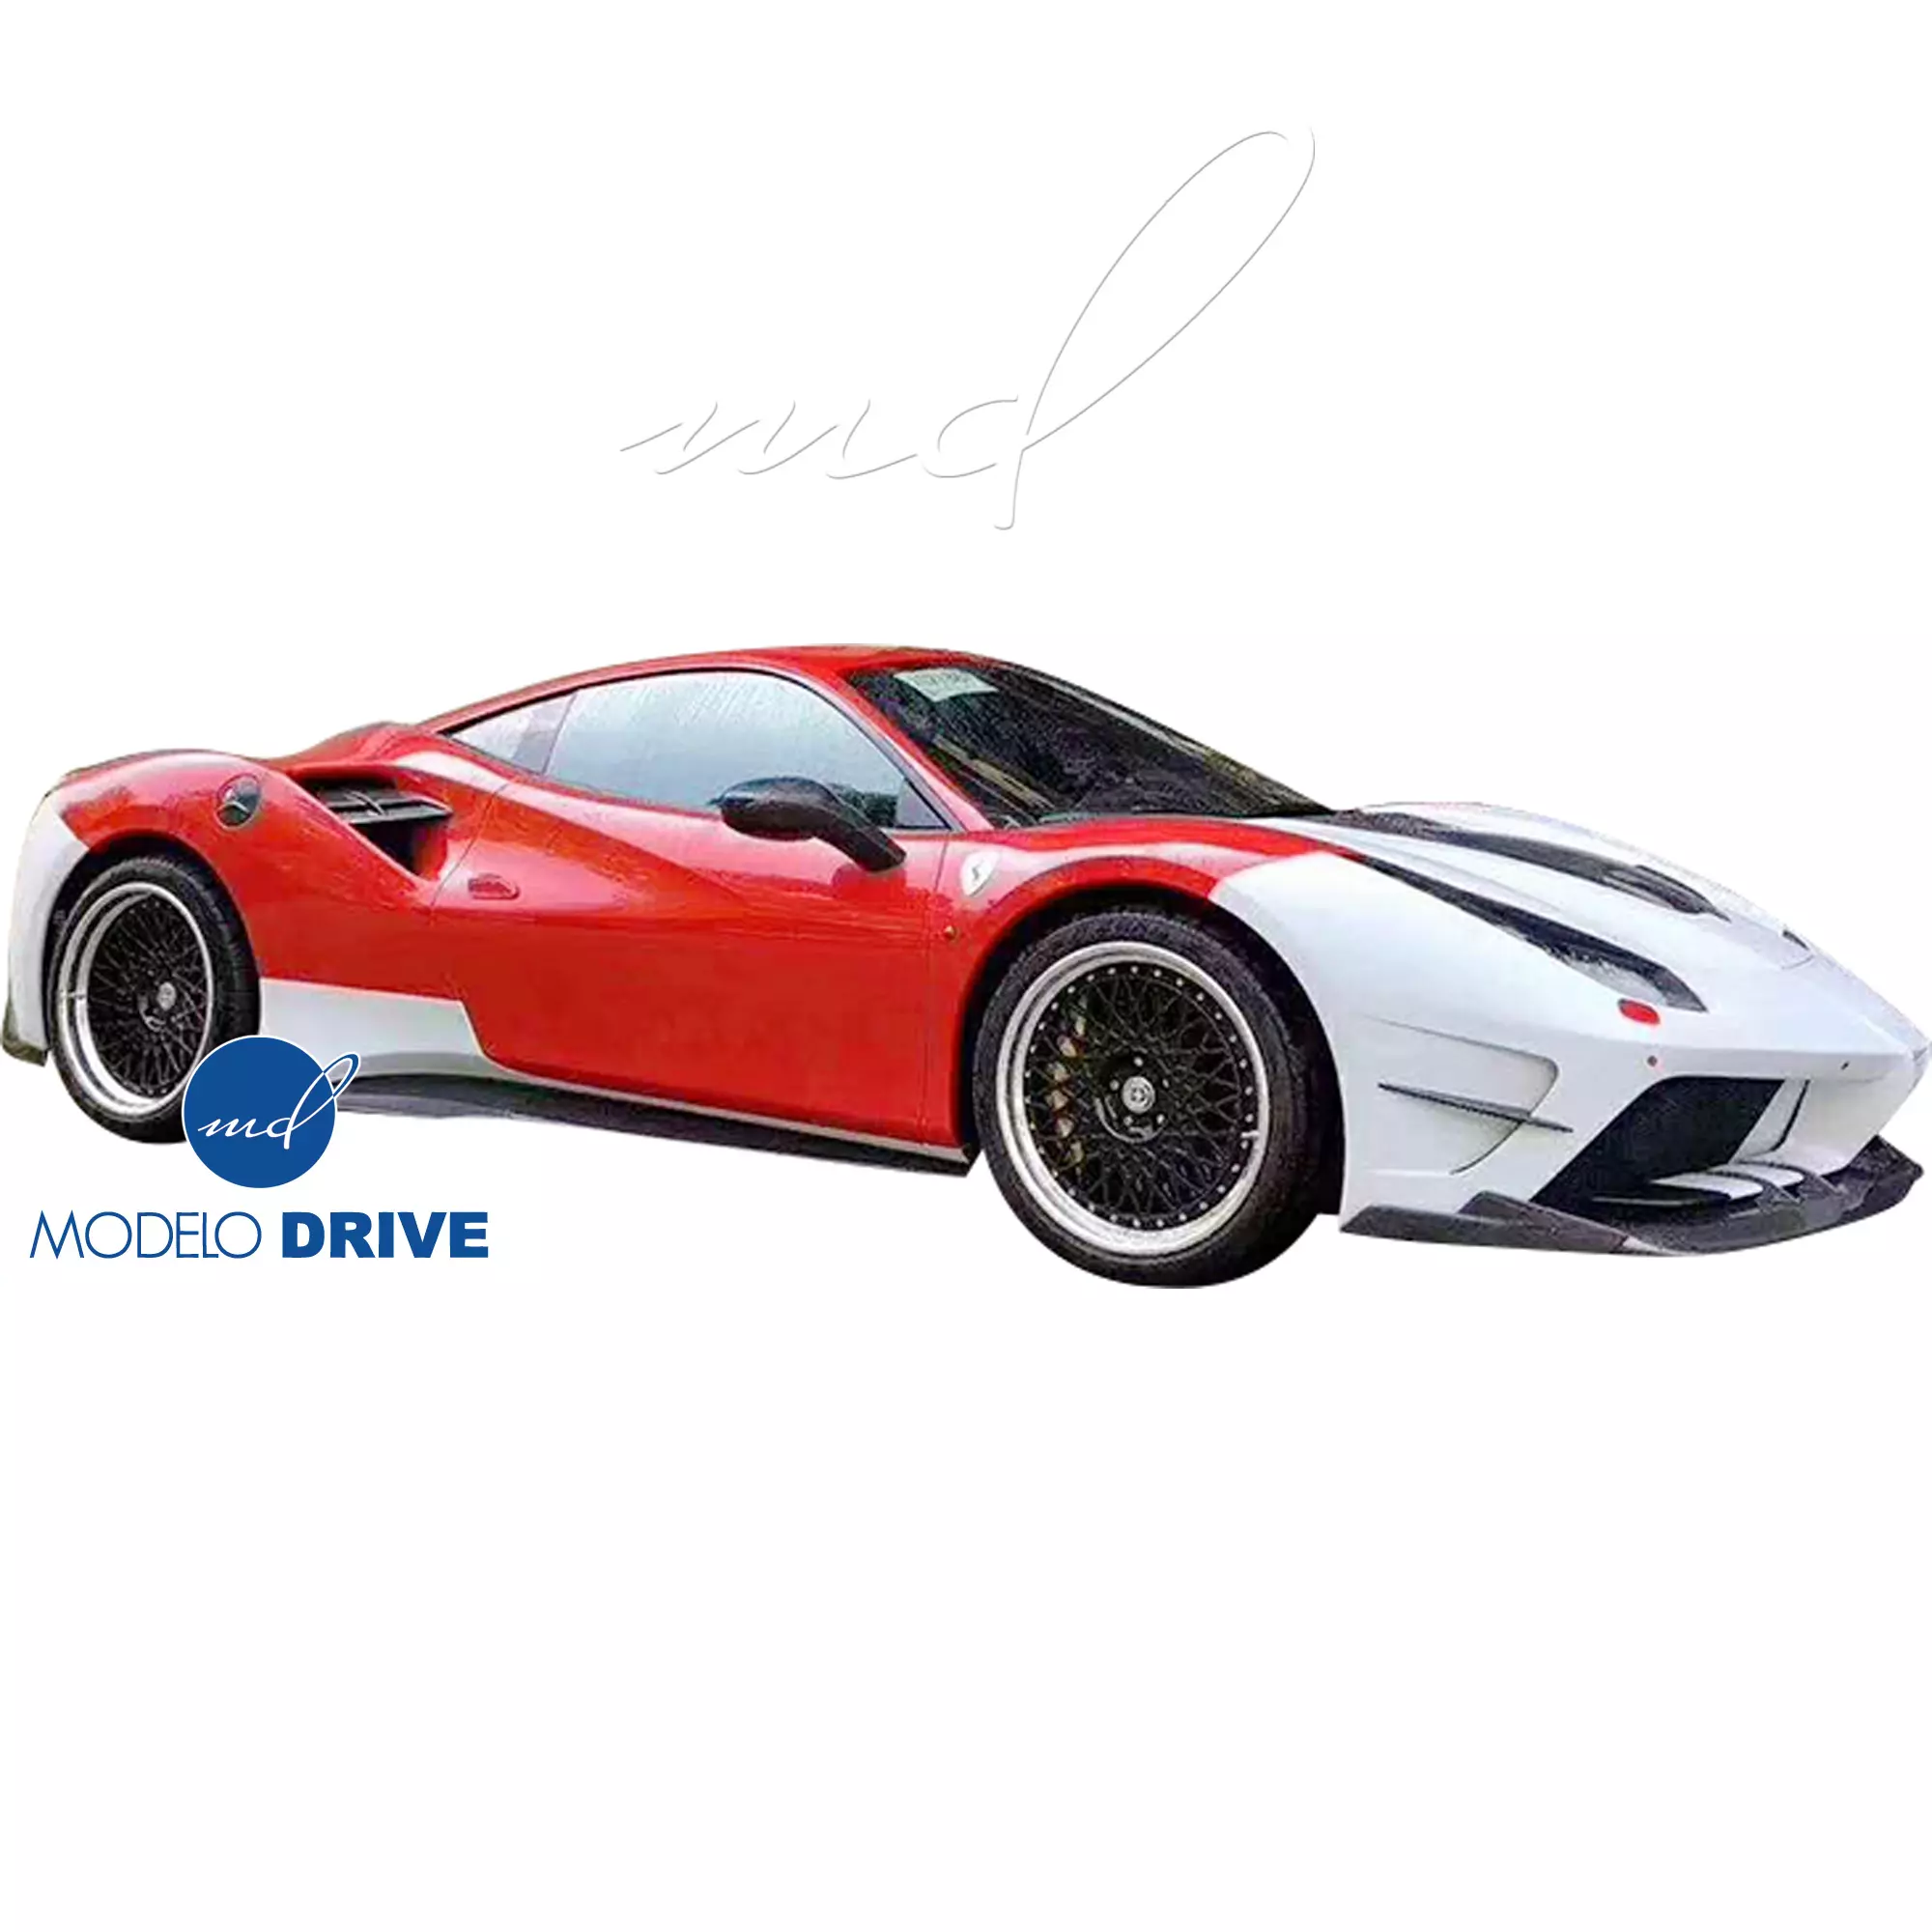 ModeloDrive Partial Carbon Fiber MDES Front Bumper w Splitter > Ferrari 488 GTB F142M 2016-2019 - Image 8